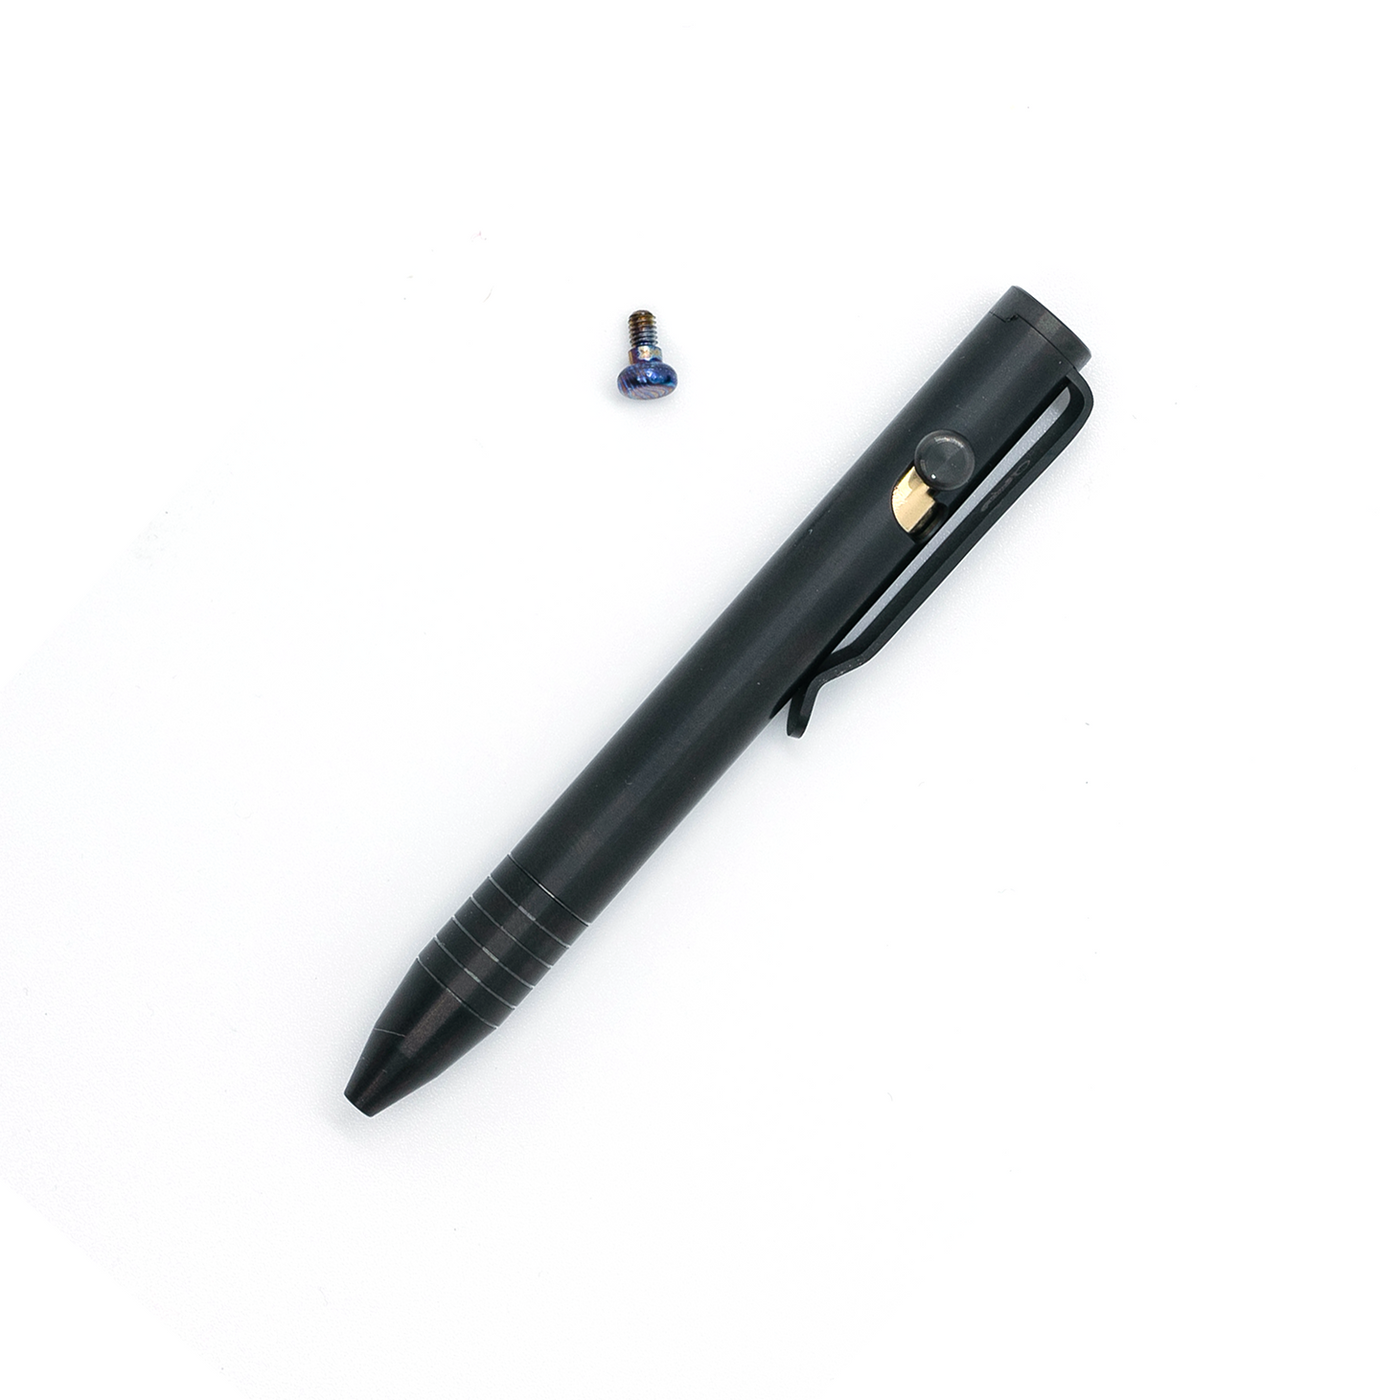 Mini Bolt Action Pen freeshipping - Big Idea Design LLC